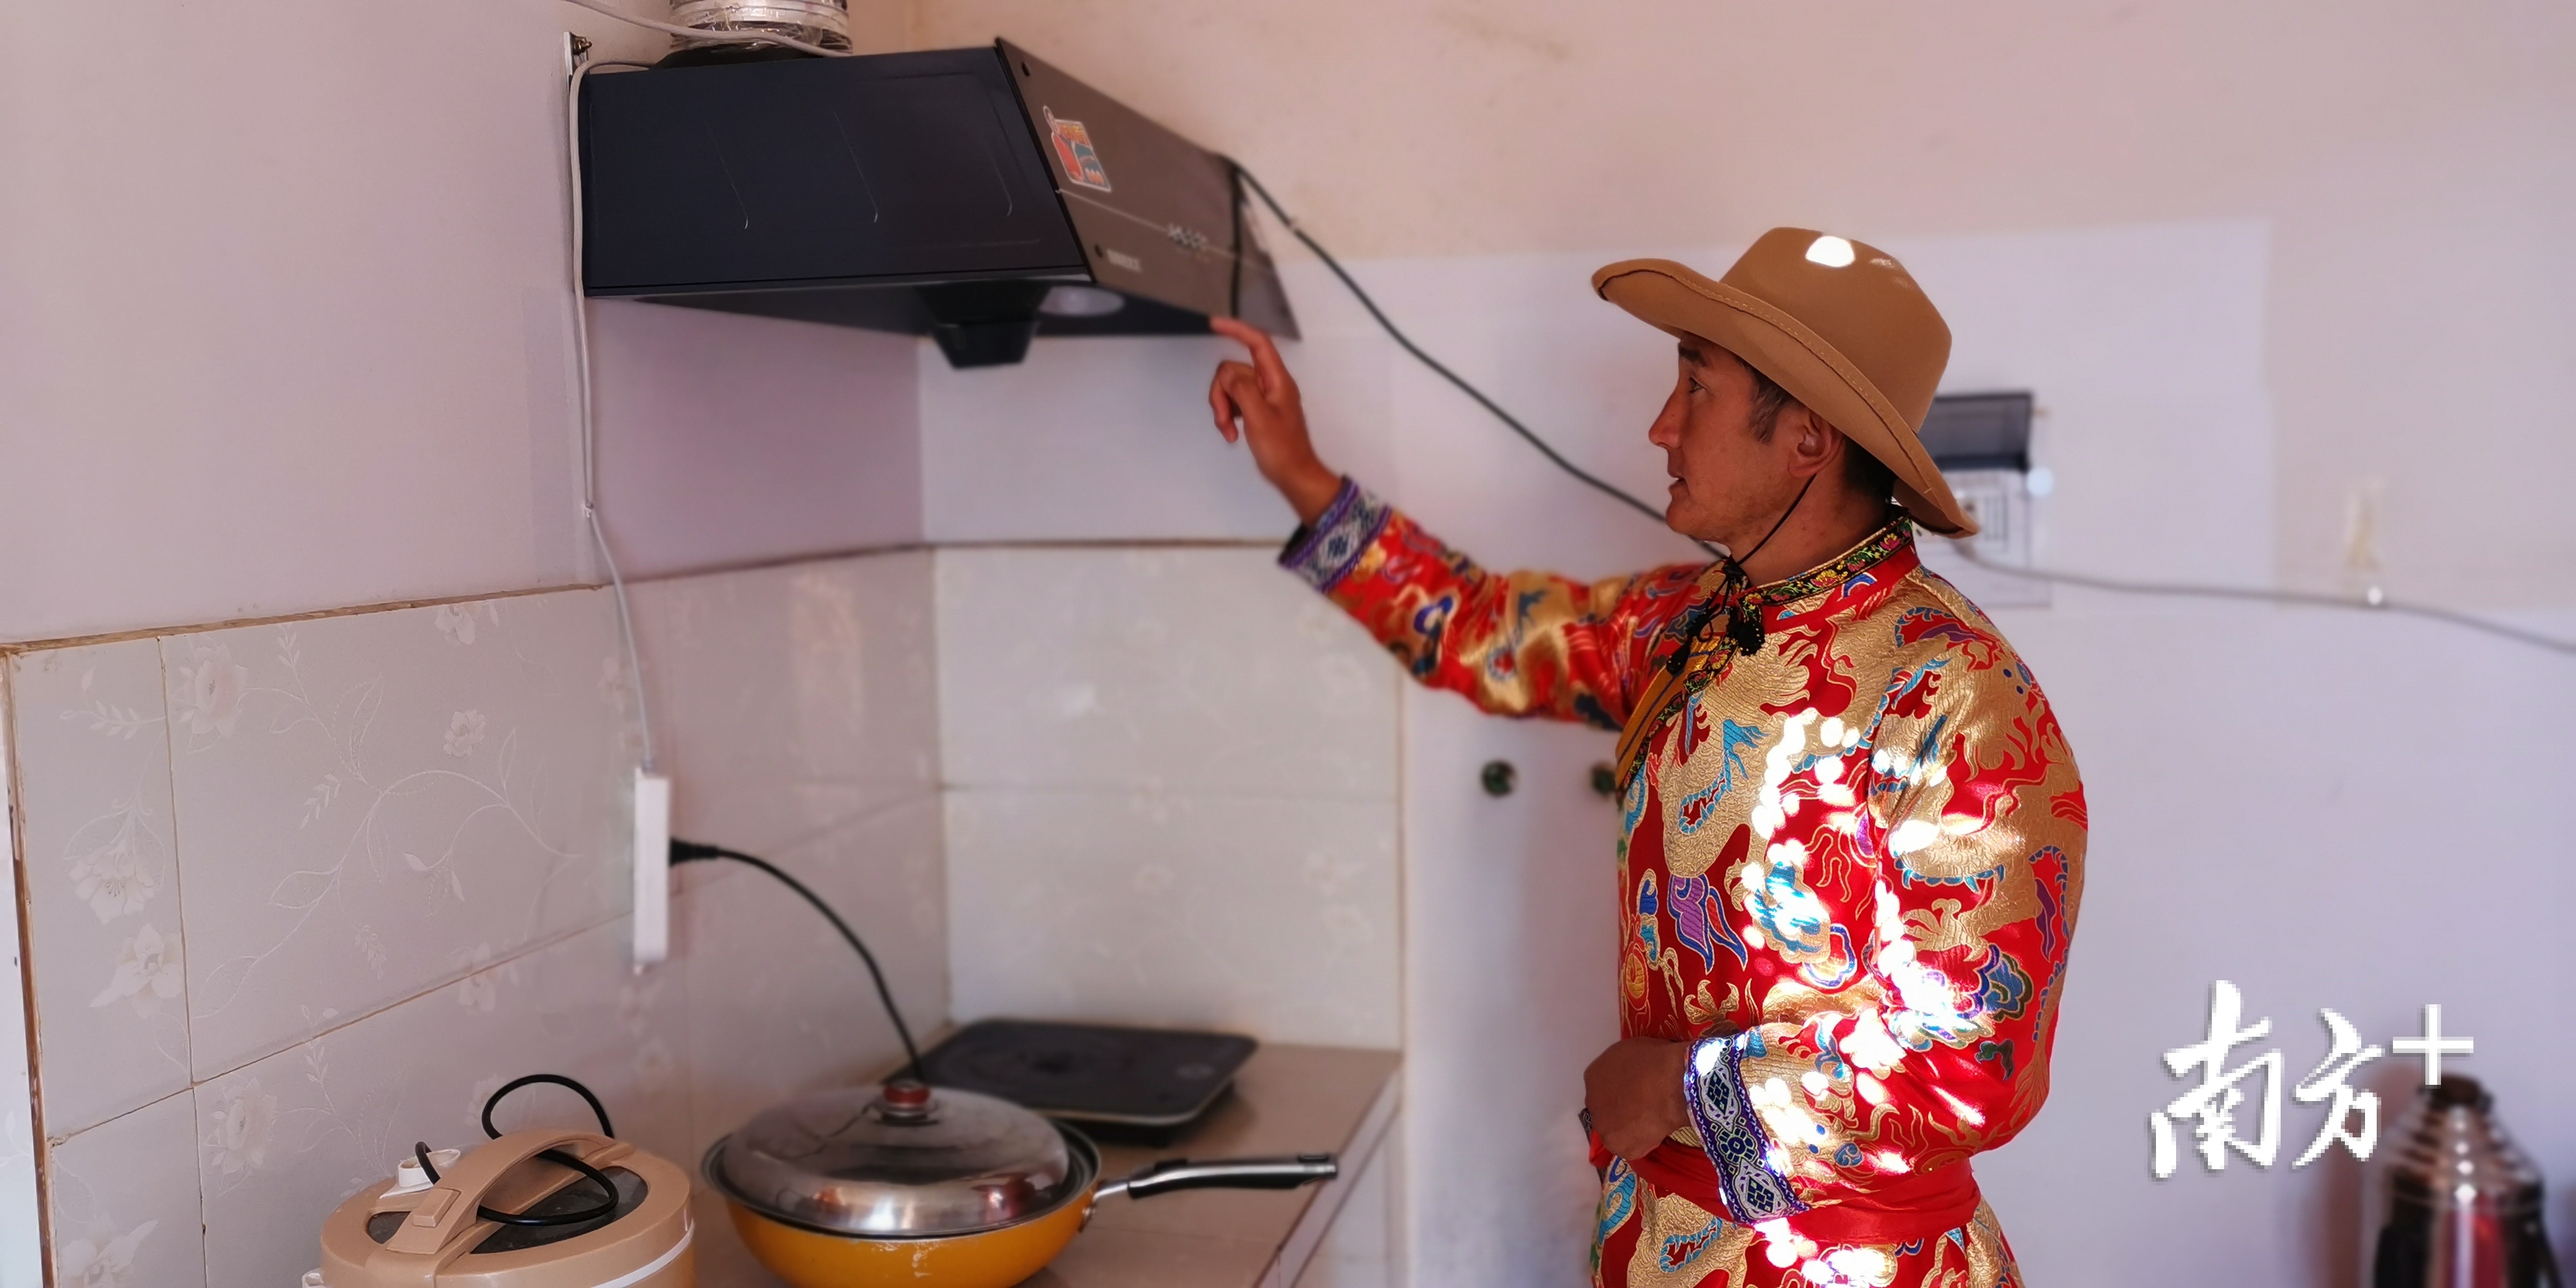 兰坪县通甸镇易门箐珠海小区熊玉全一家用了上了烹饪电器。